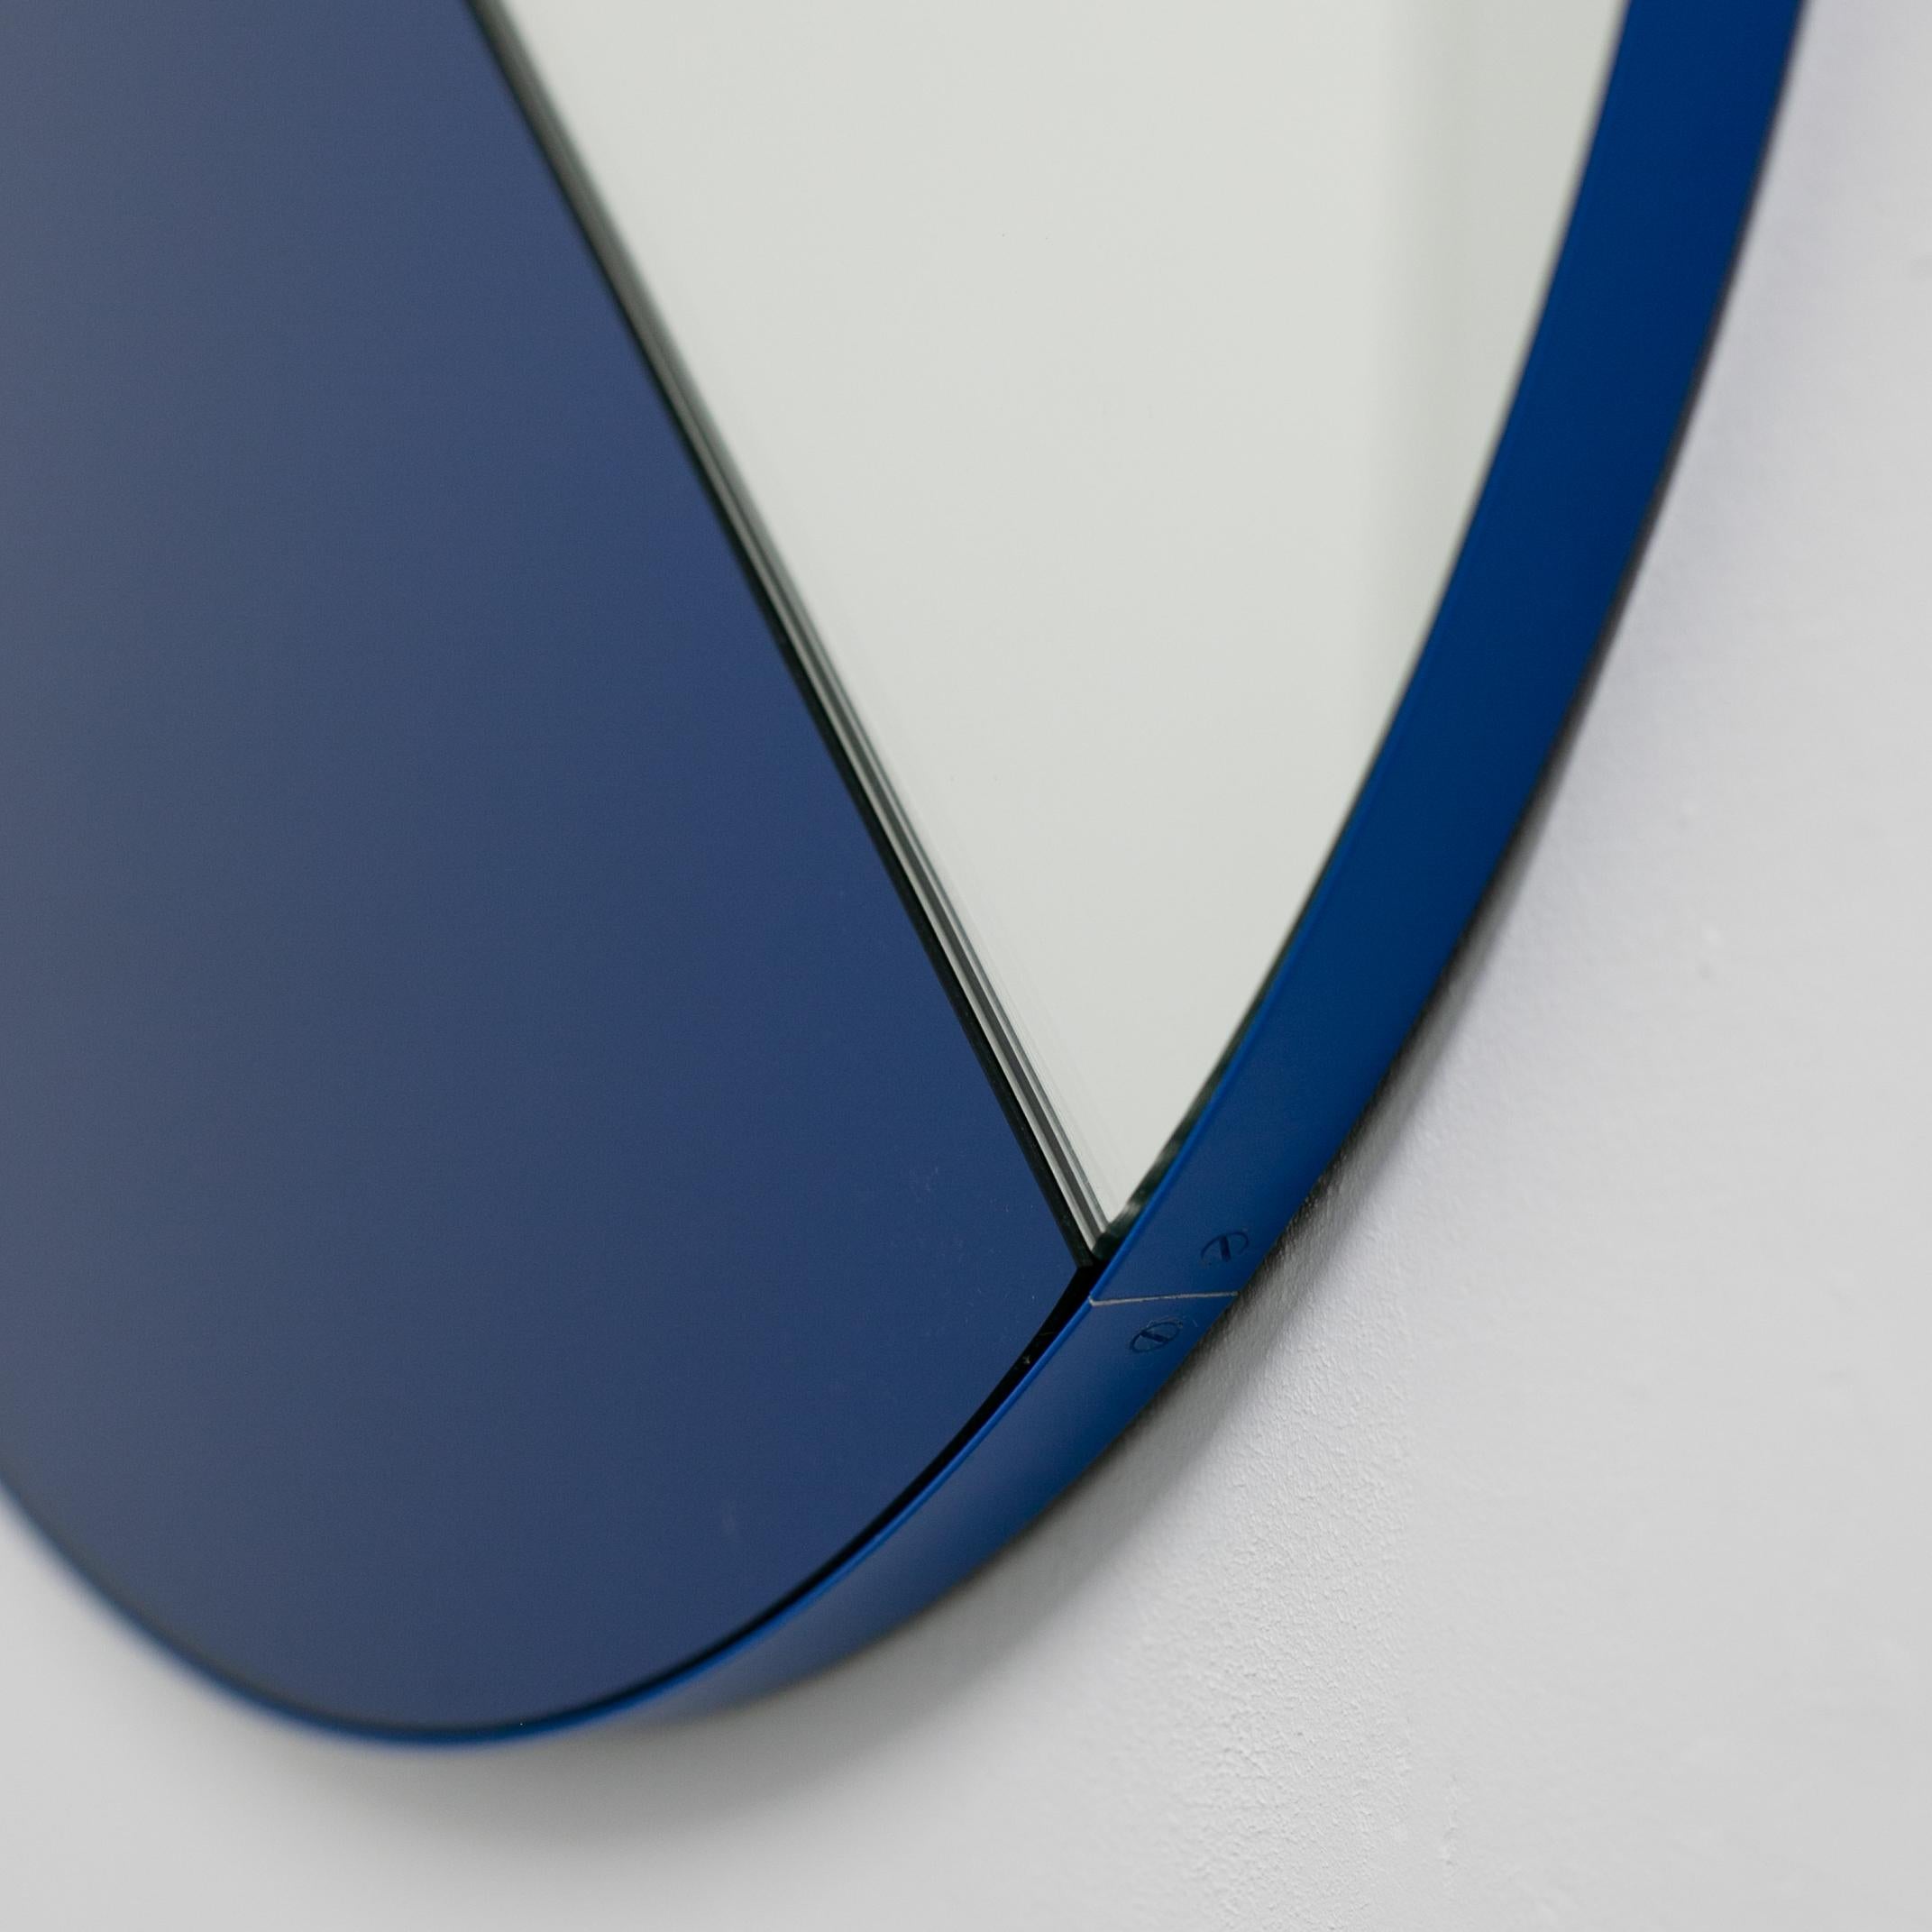 Miroir rond Orbis Dualis bleu et argenté avec cadre bleu, en stock en vente 1